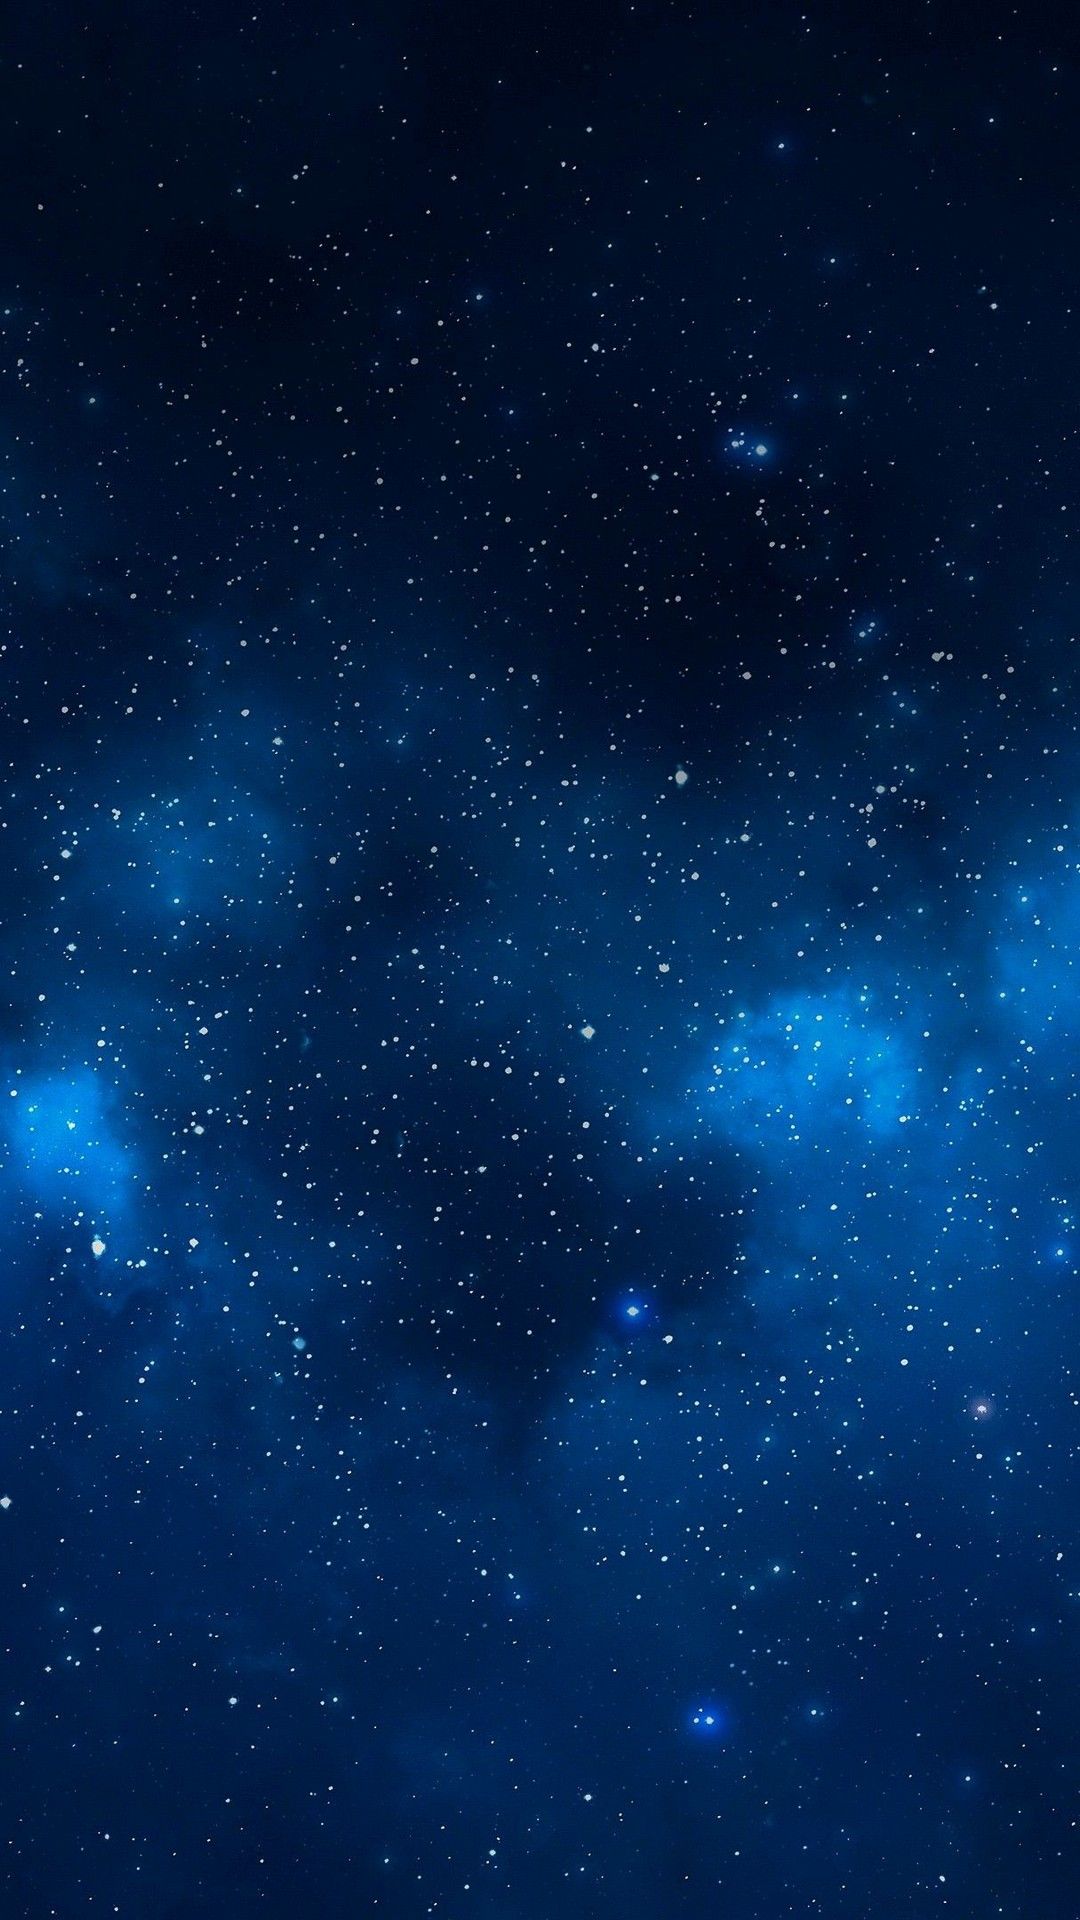 تصویر خارق العاده از فضا با ستاره های زیبا 